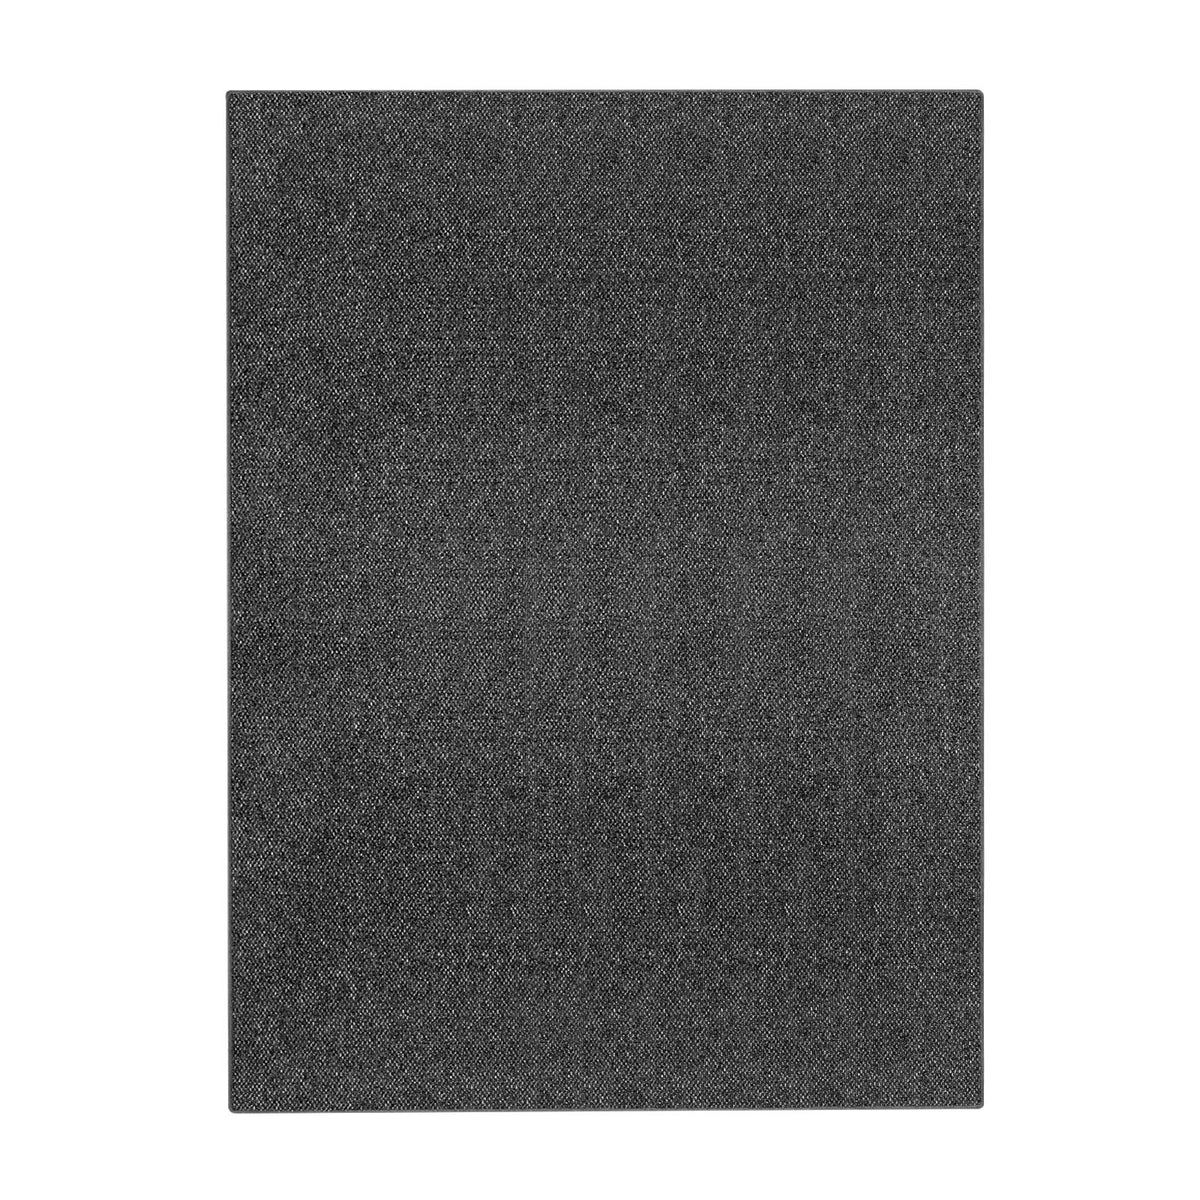 Antirutsch Teppichunterlage Teppich, Schwarz-weiße, saugfähige